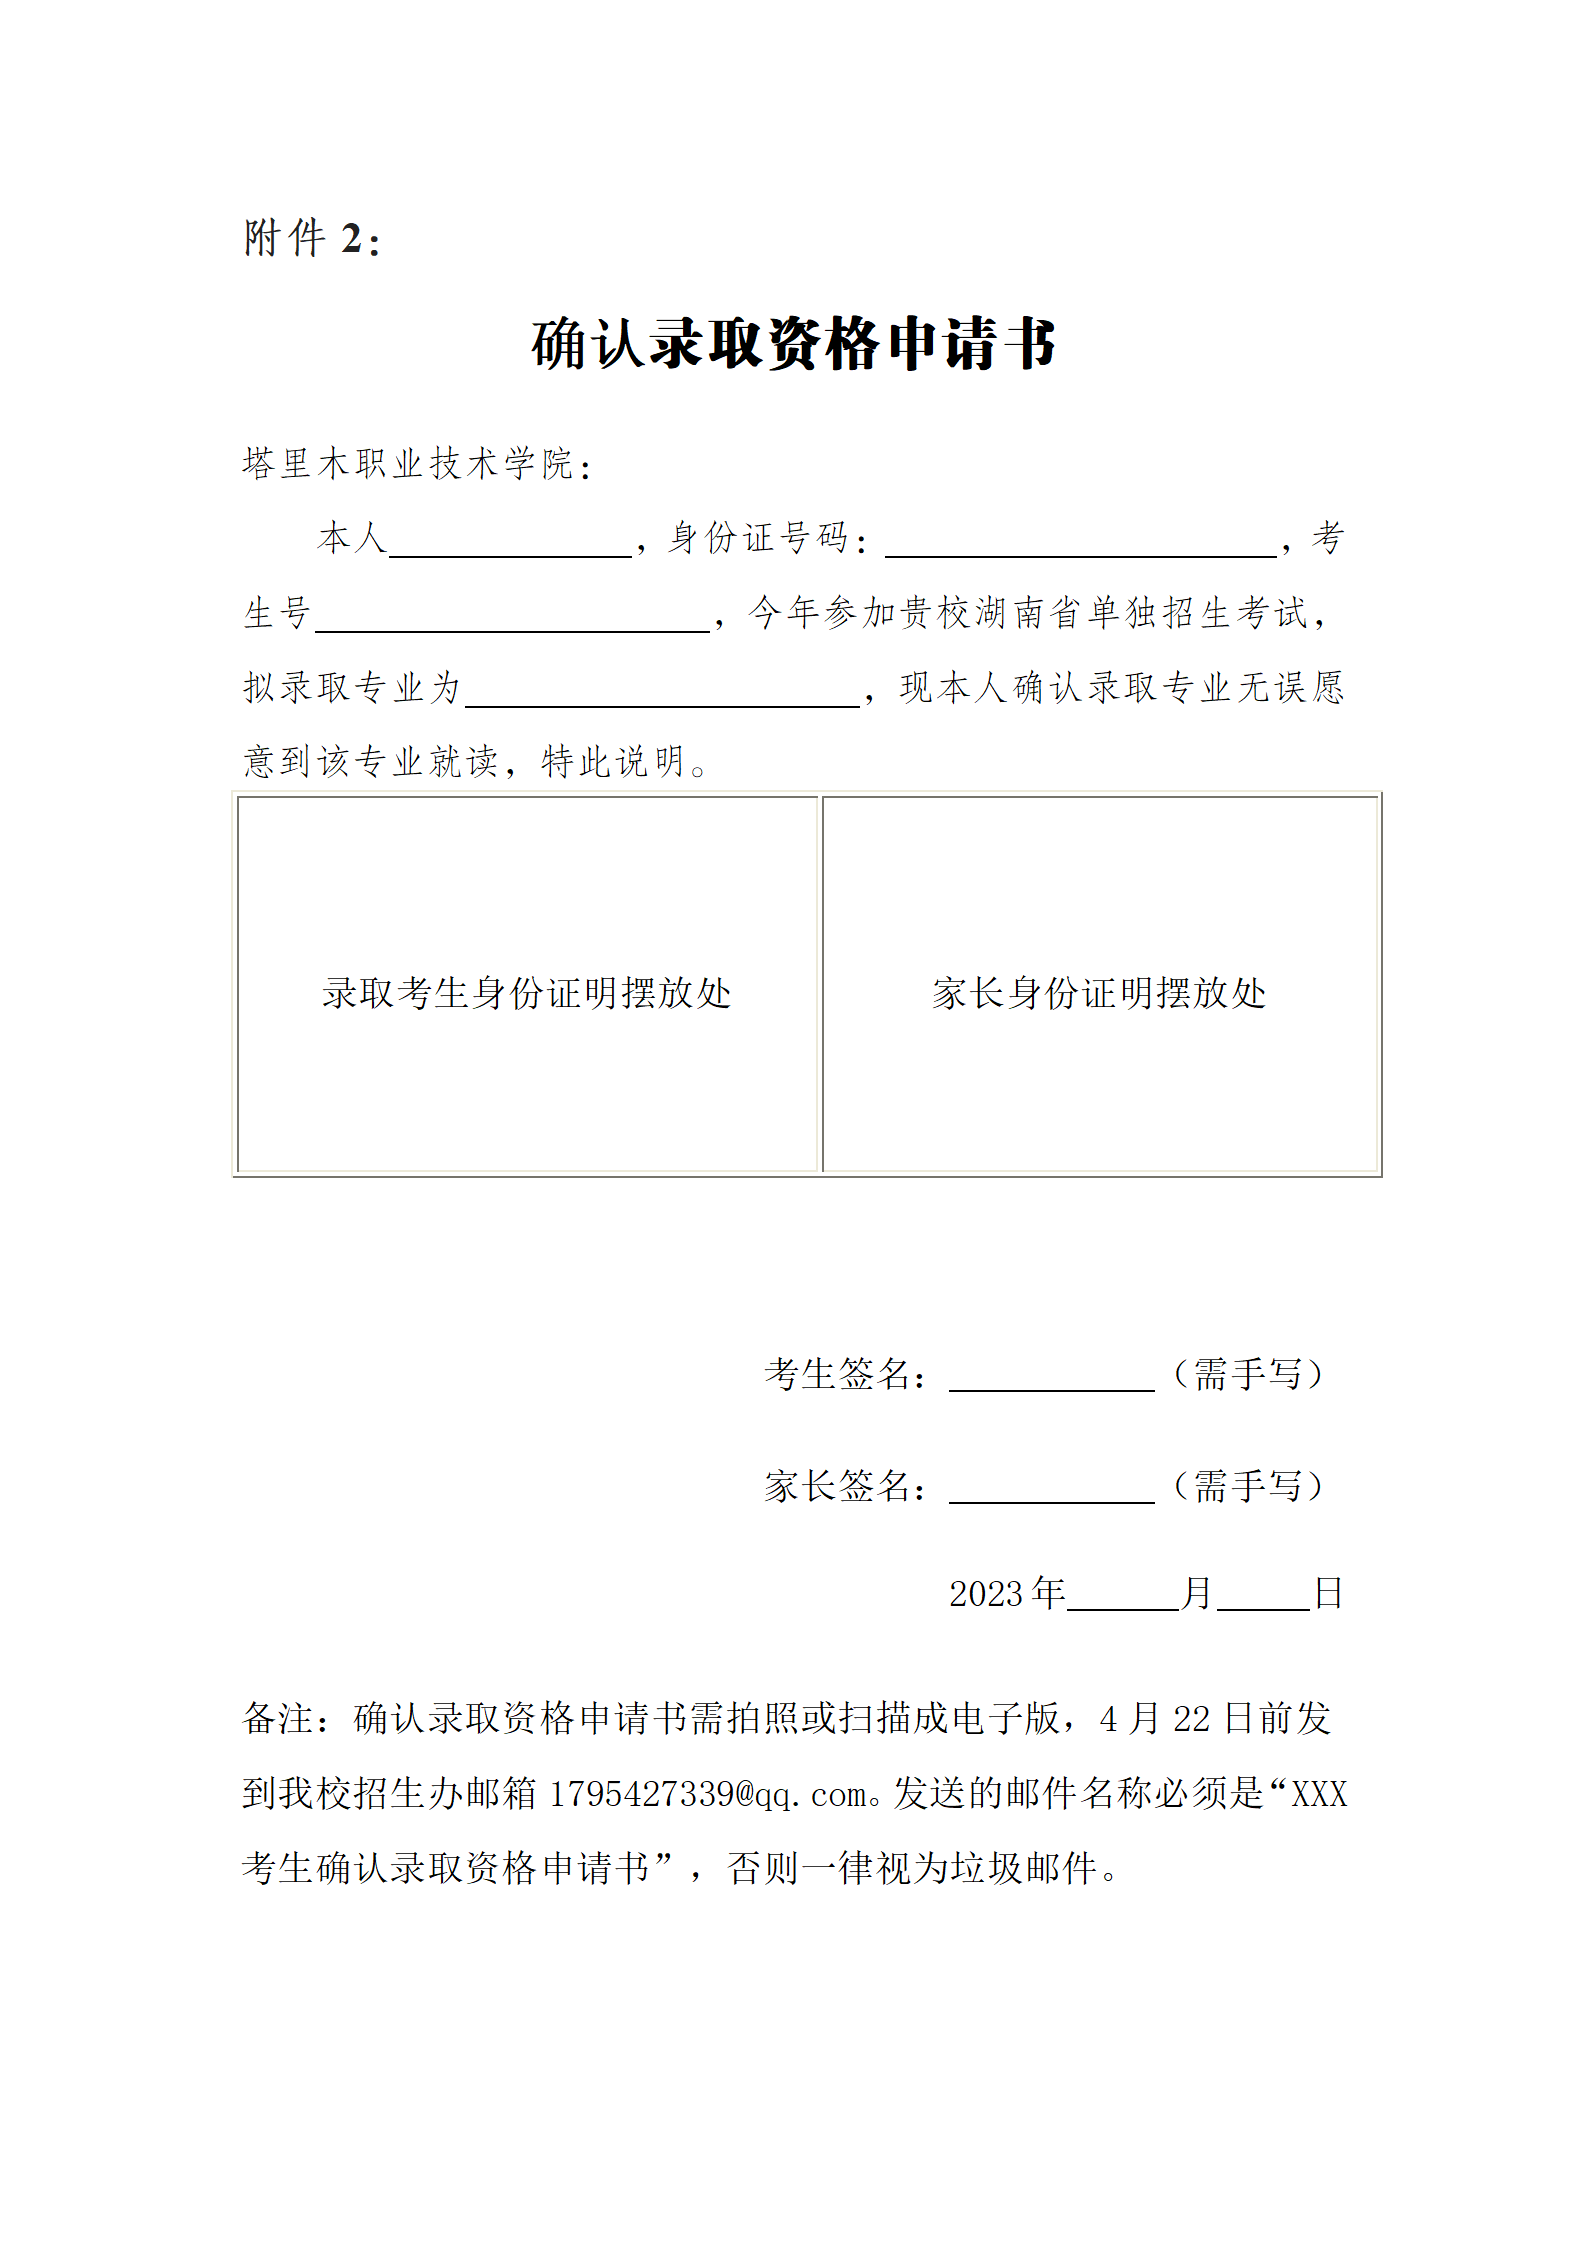 塔里木职业技术学院2023年湖南省高职单独考试招生第二志愿拟录取名单公示_06.png